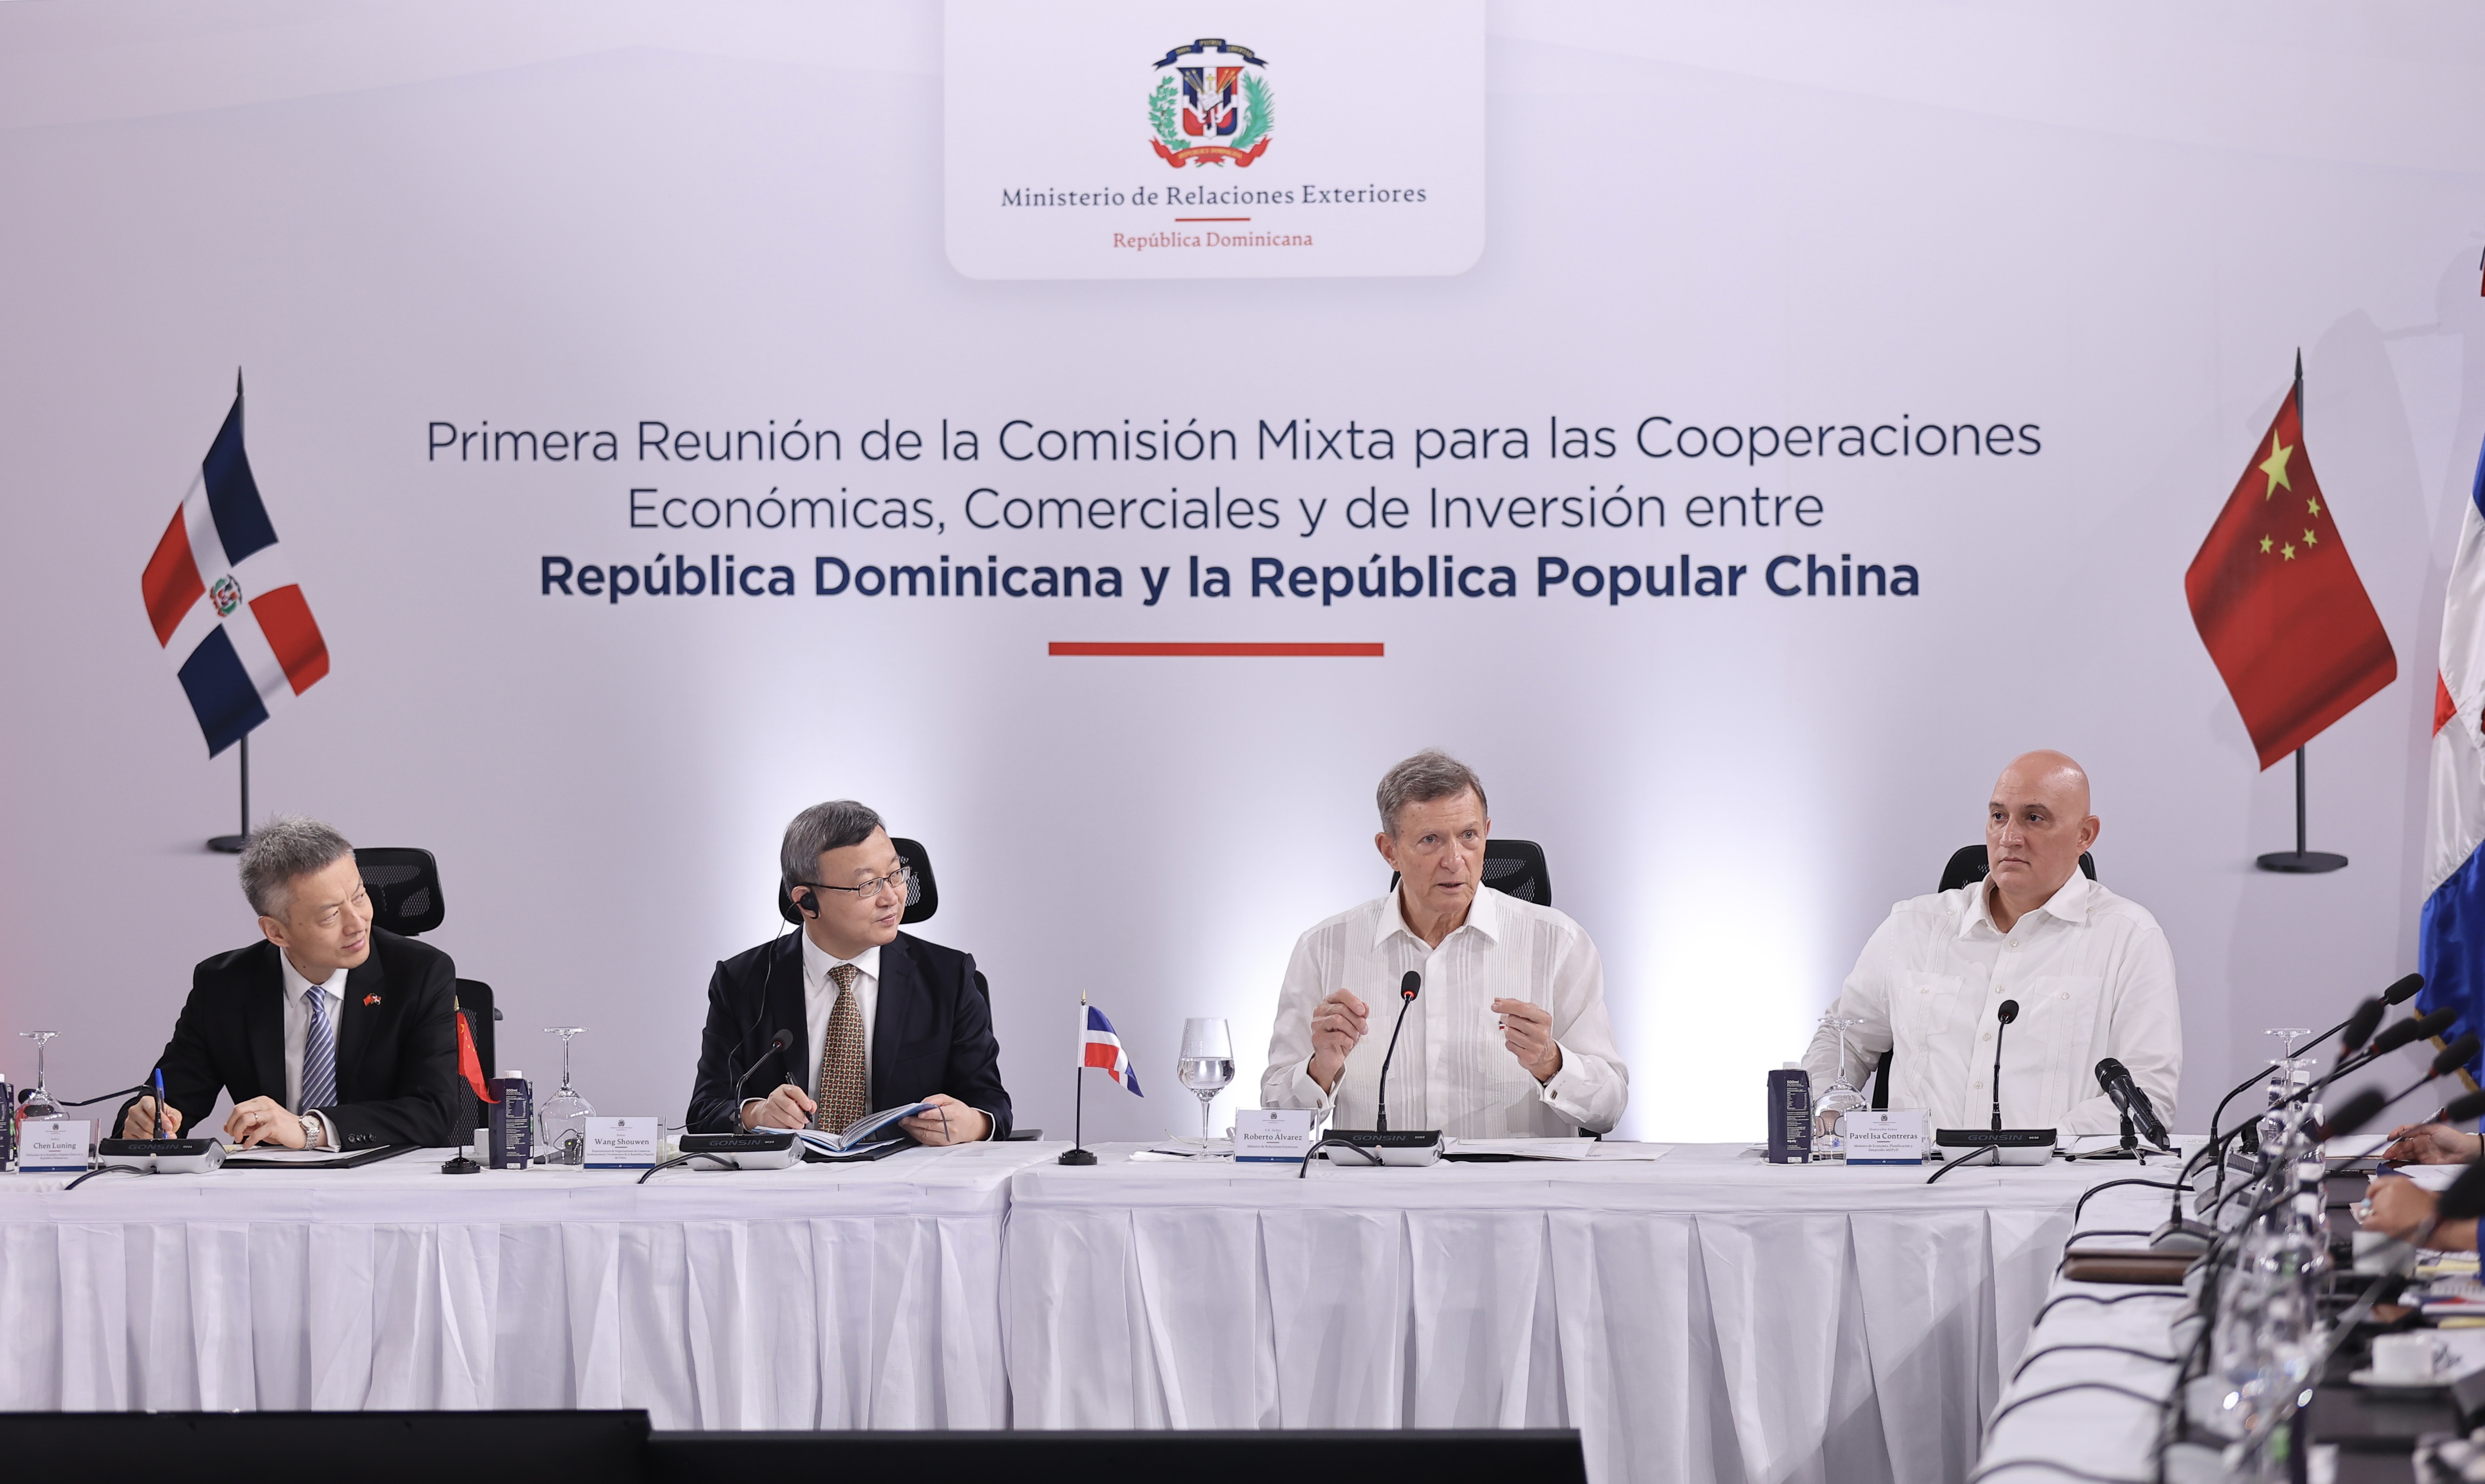 REPÚBLICA DOMINICANA: República Dominicana y la República Popular China celebran exitosa reunión para promover intercambio comercial e inversión